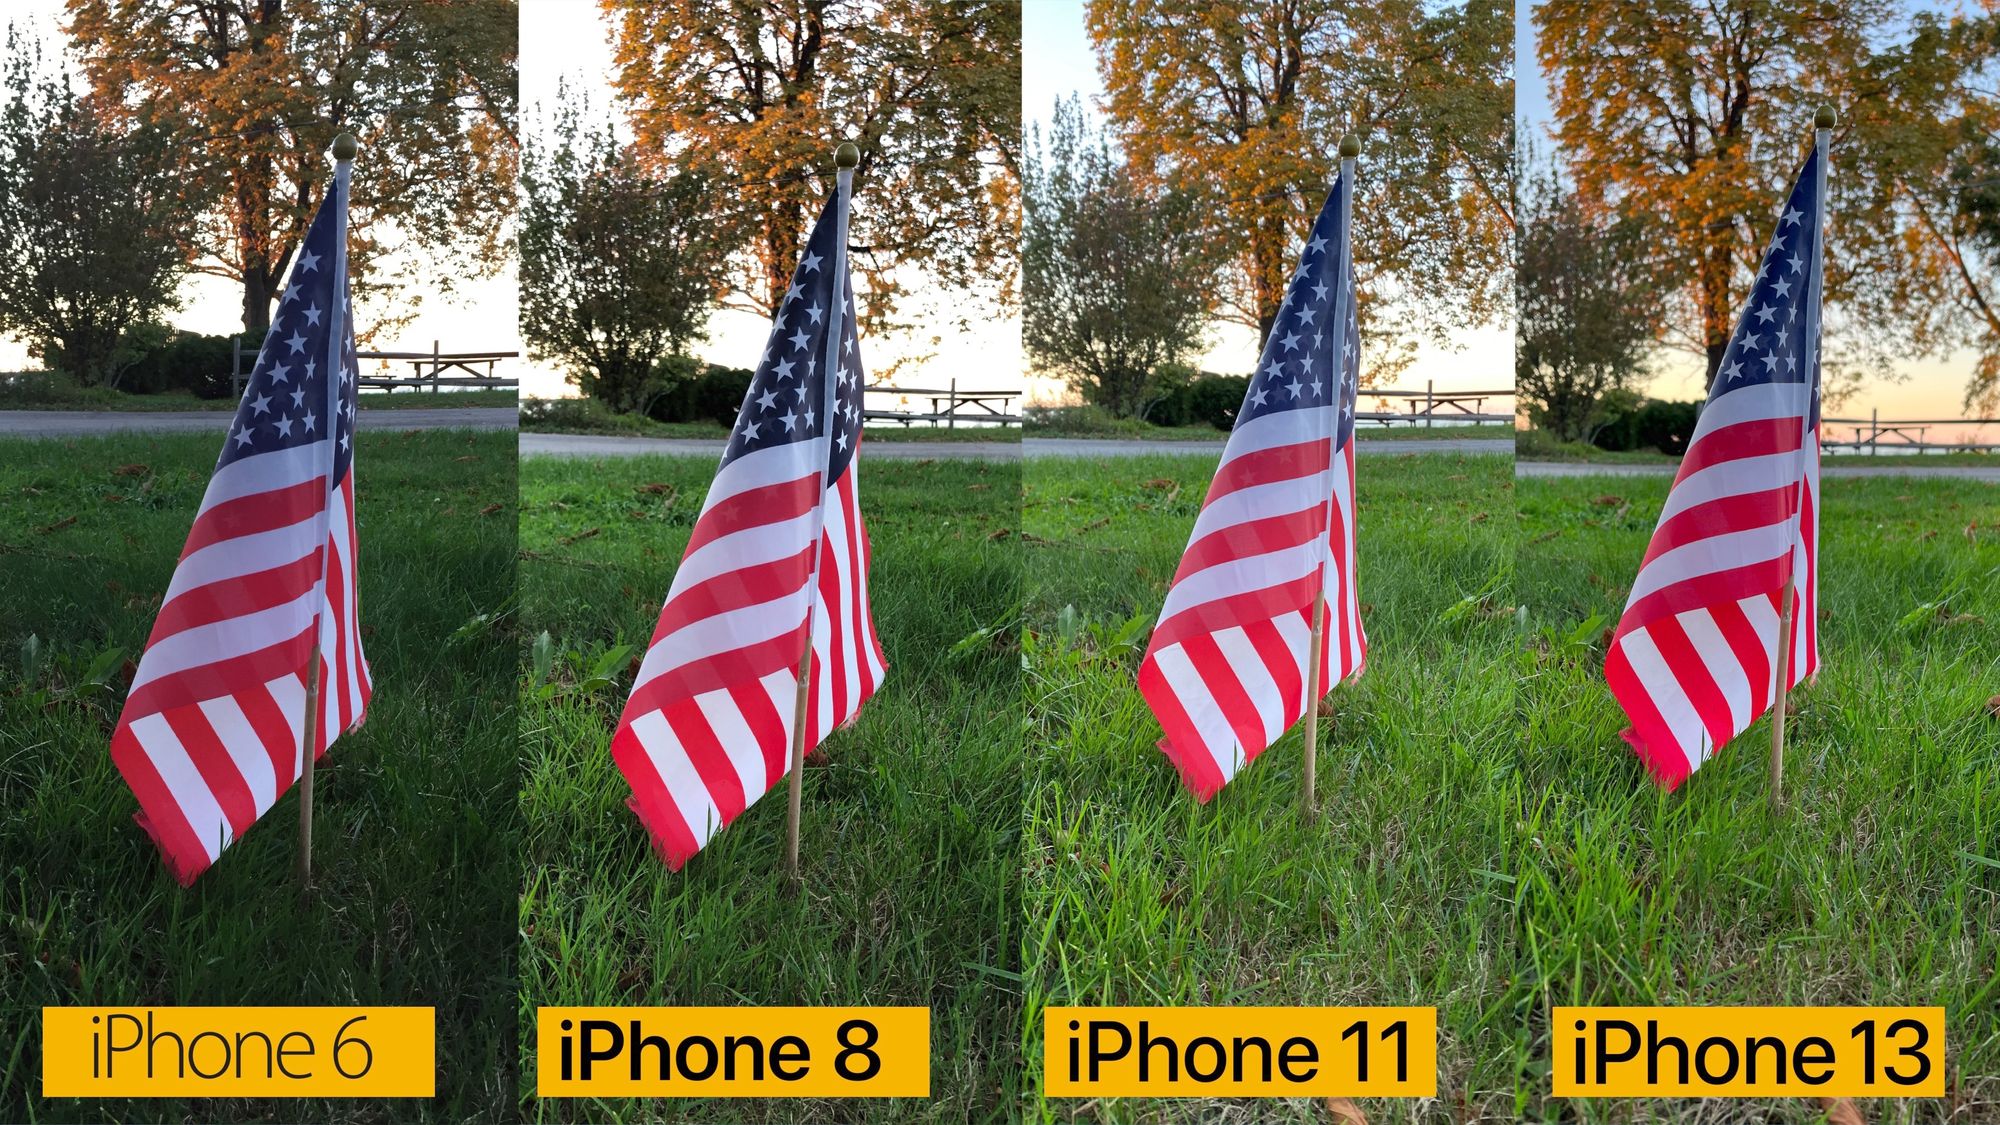 В сравнении камер разных поколений iPhone 13 вышел бесспорным победителем